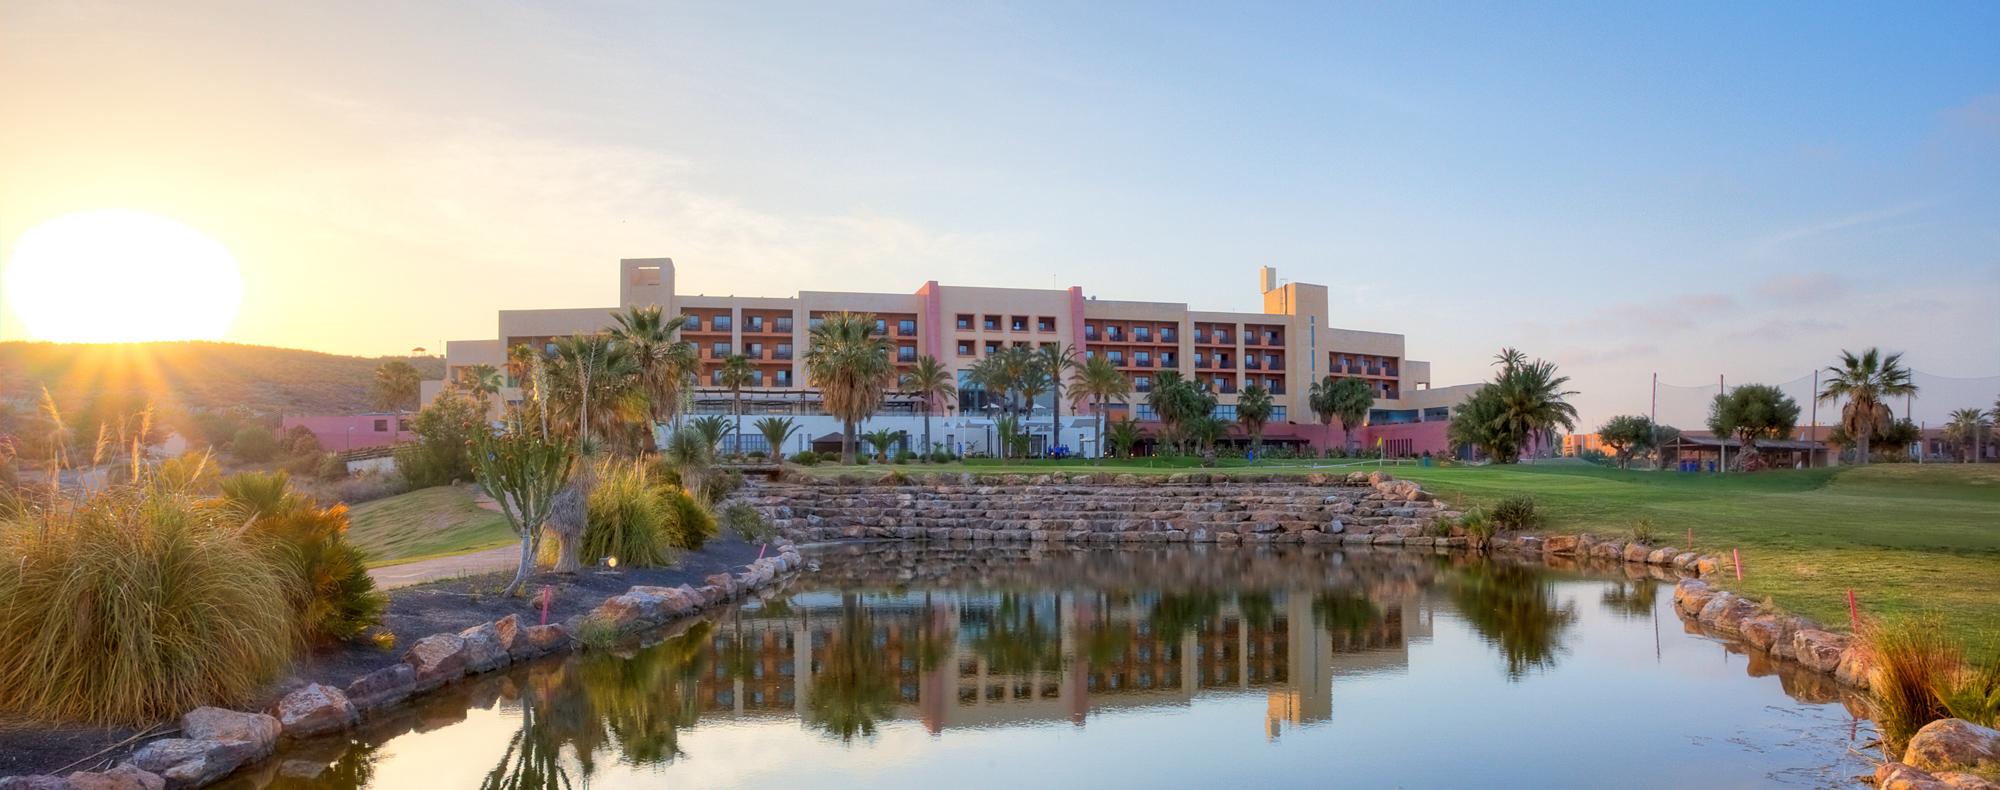 The Valle del Este Golf Resort's scenic hotel within magnificent Costa Almeria.